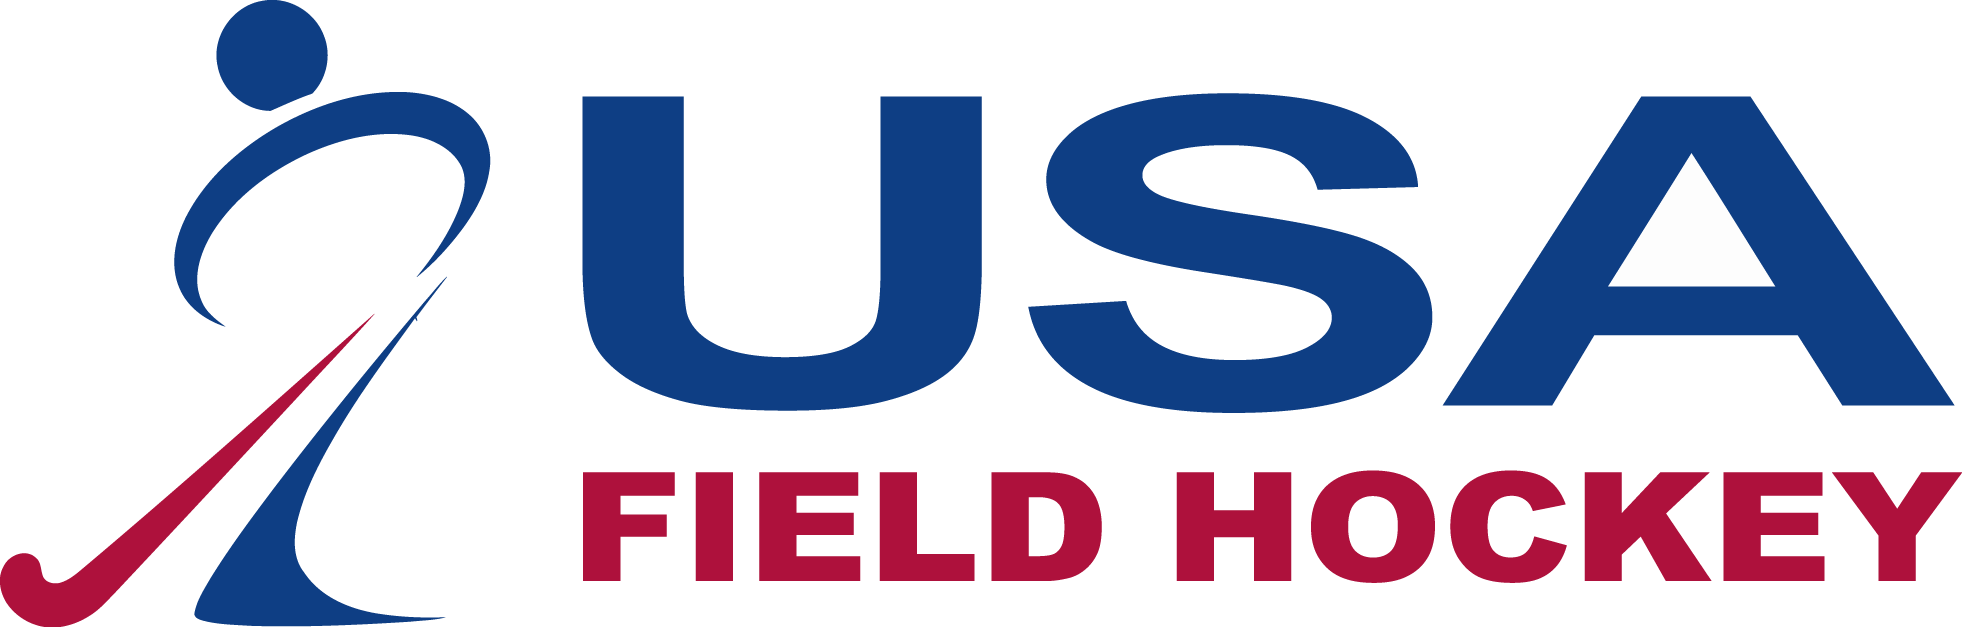 Usa Field Hockey Logo - Usa Field Hockey Logo (1962x627)